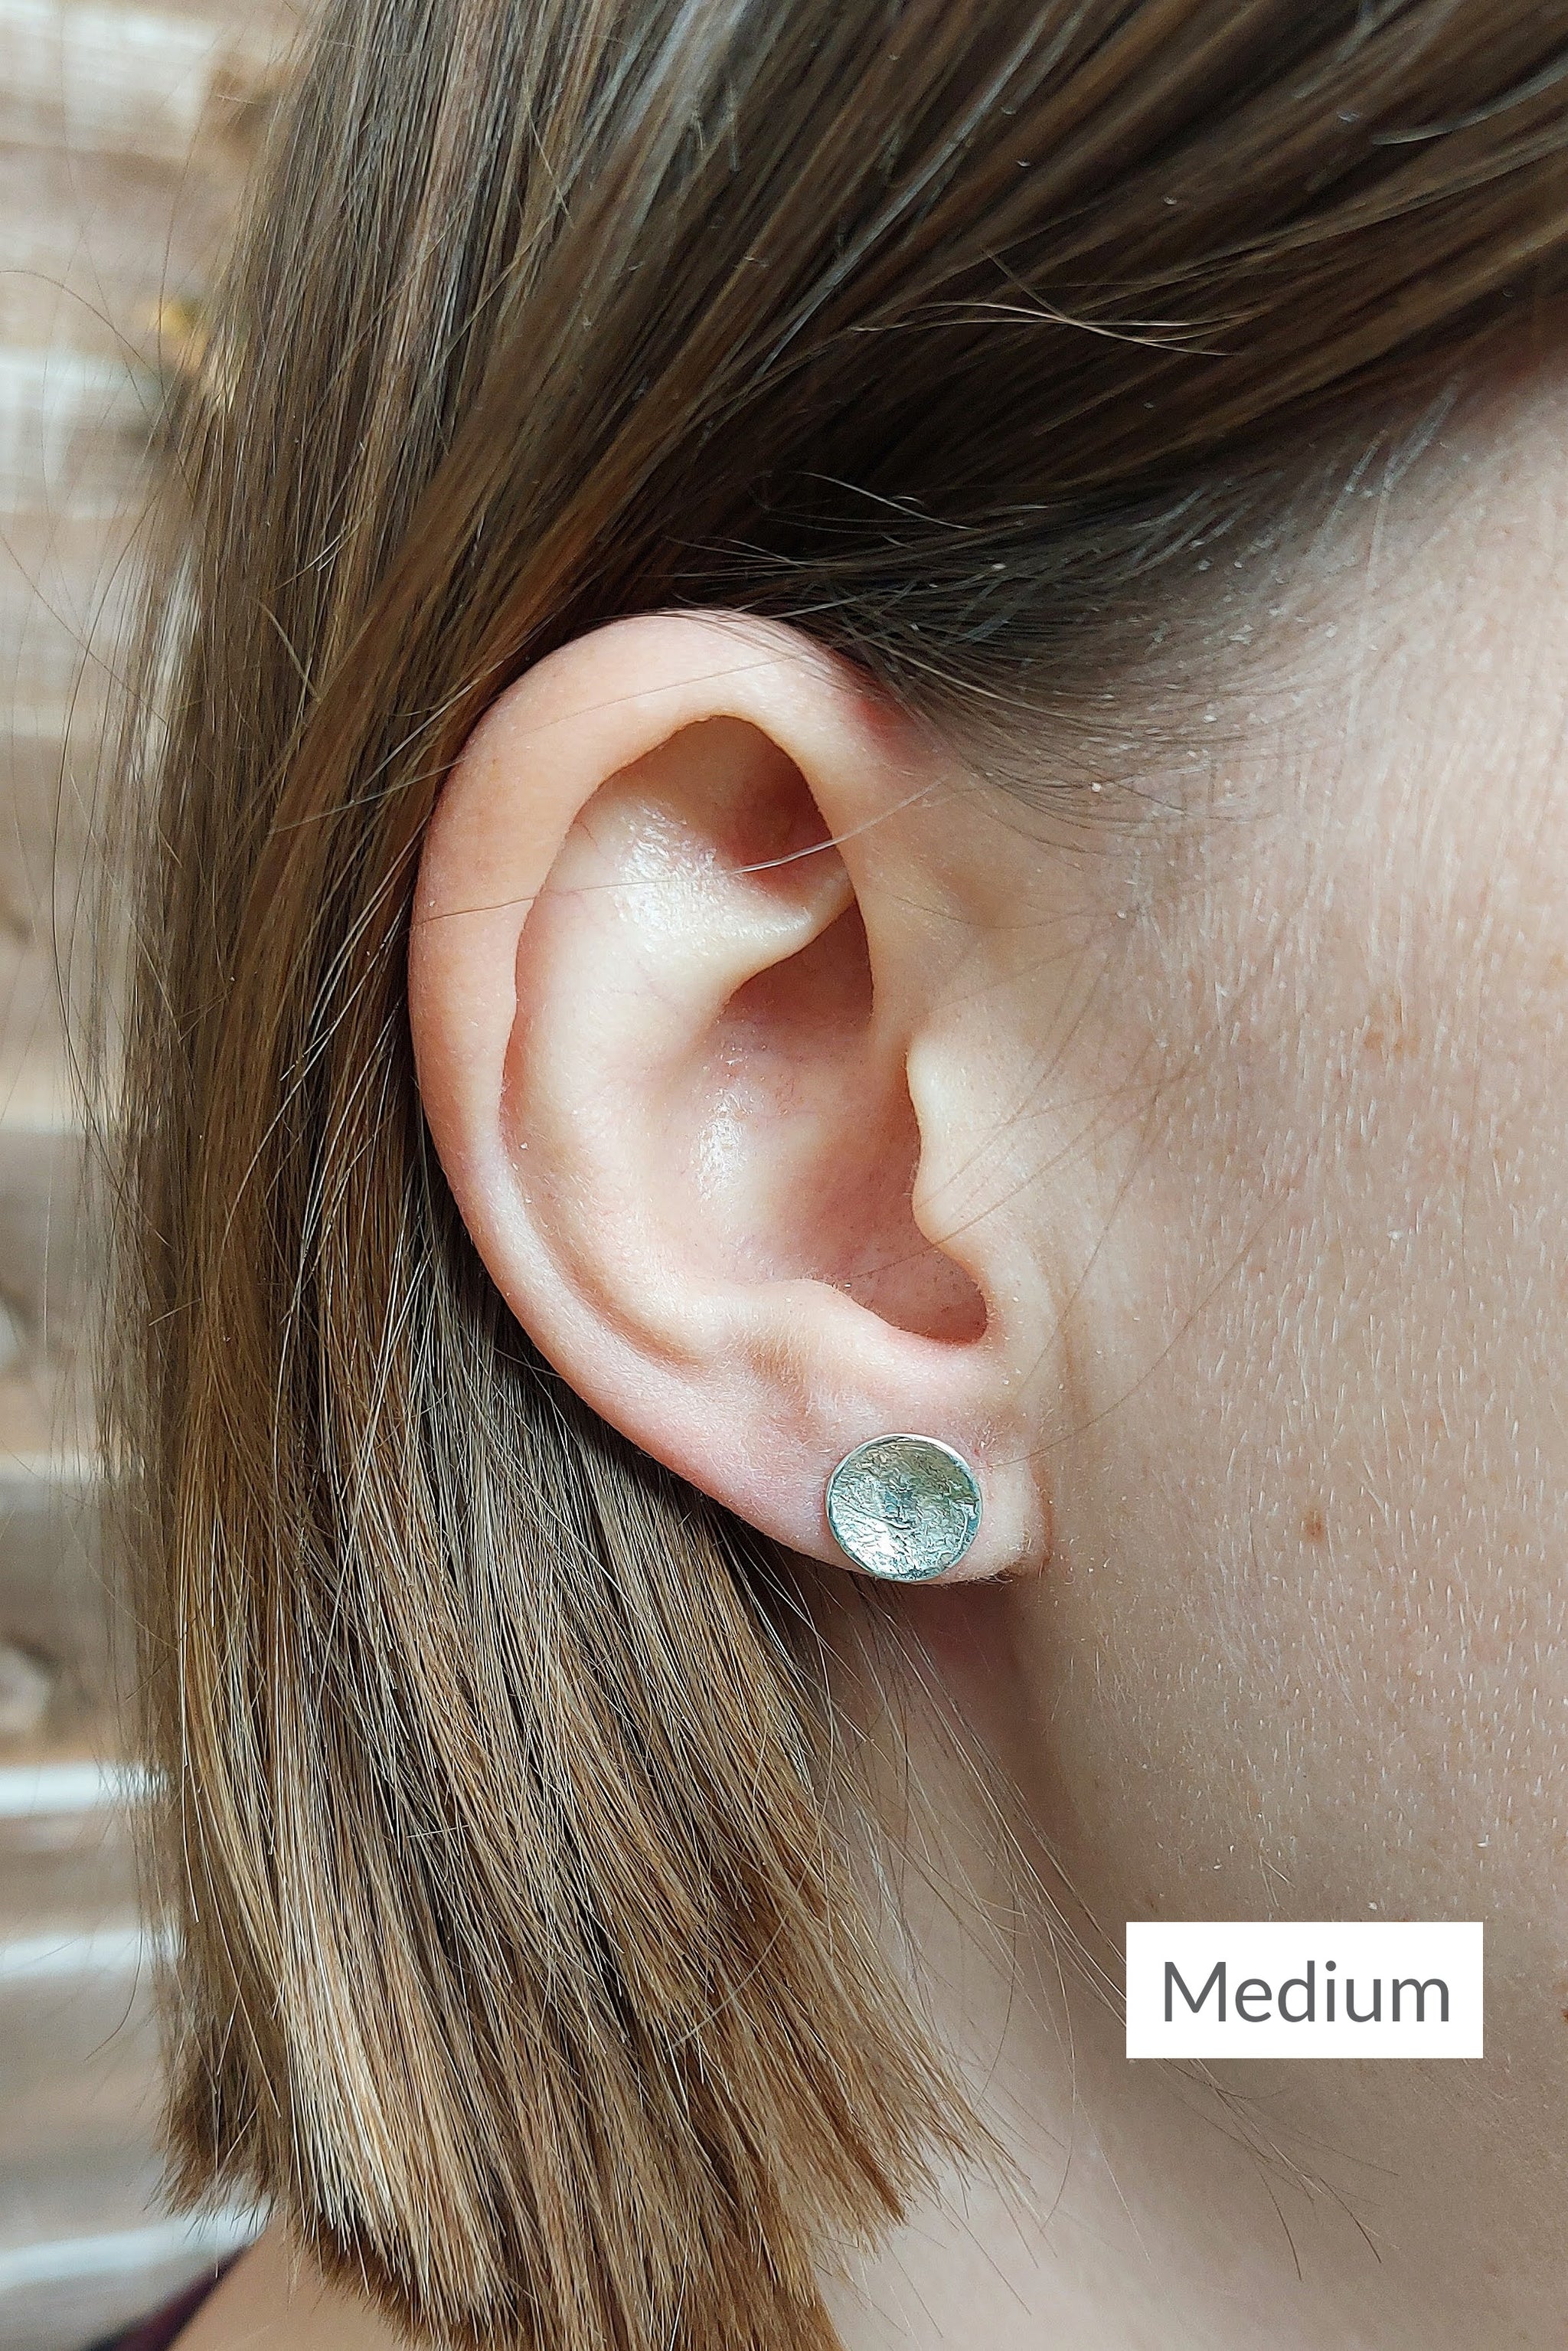 Stormy seas stud earrings by Gemma Tremayne Jewellery, handmade silver stud earrings